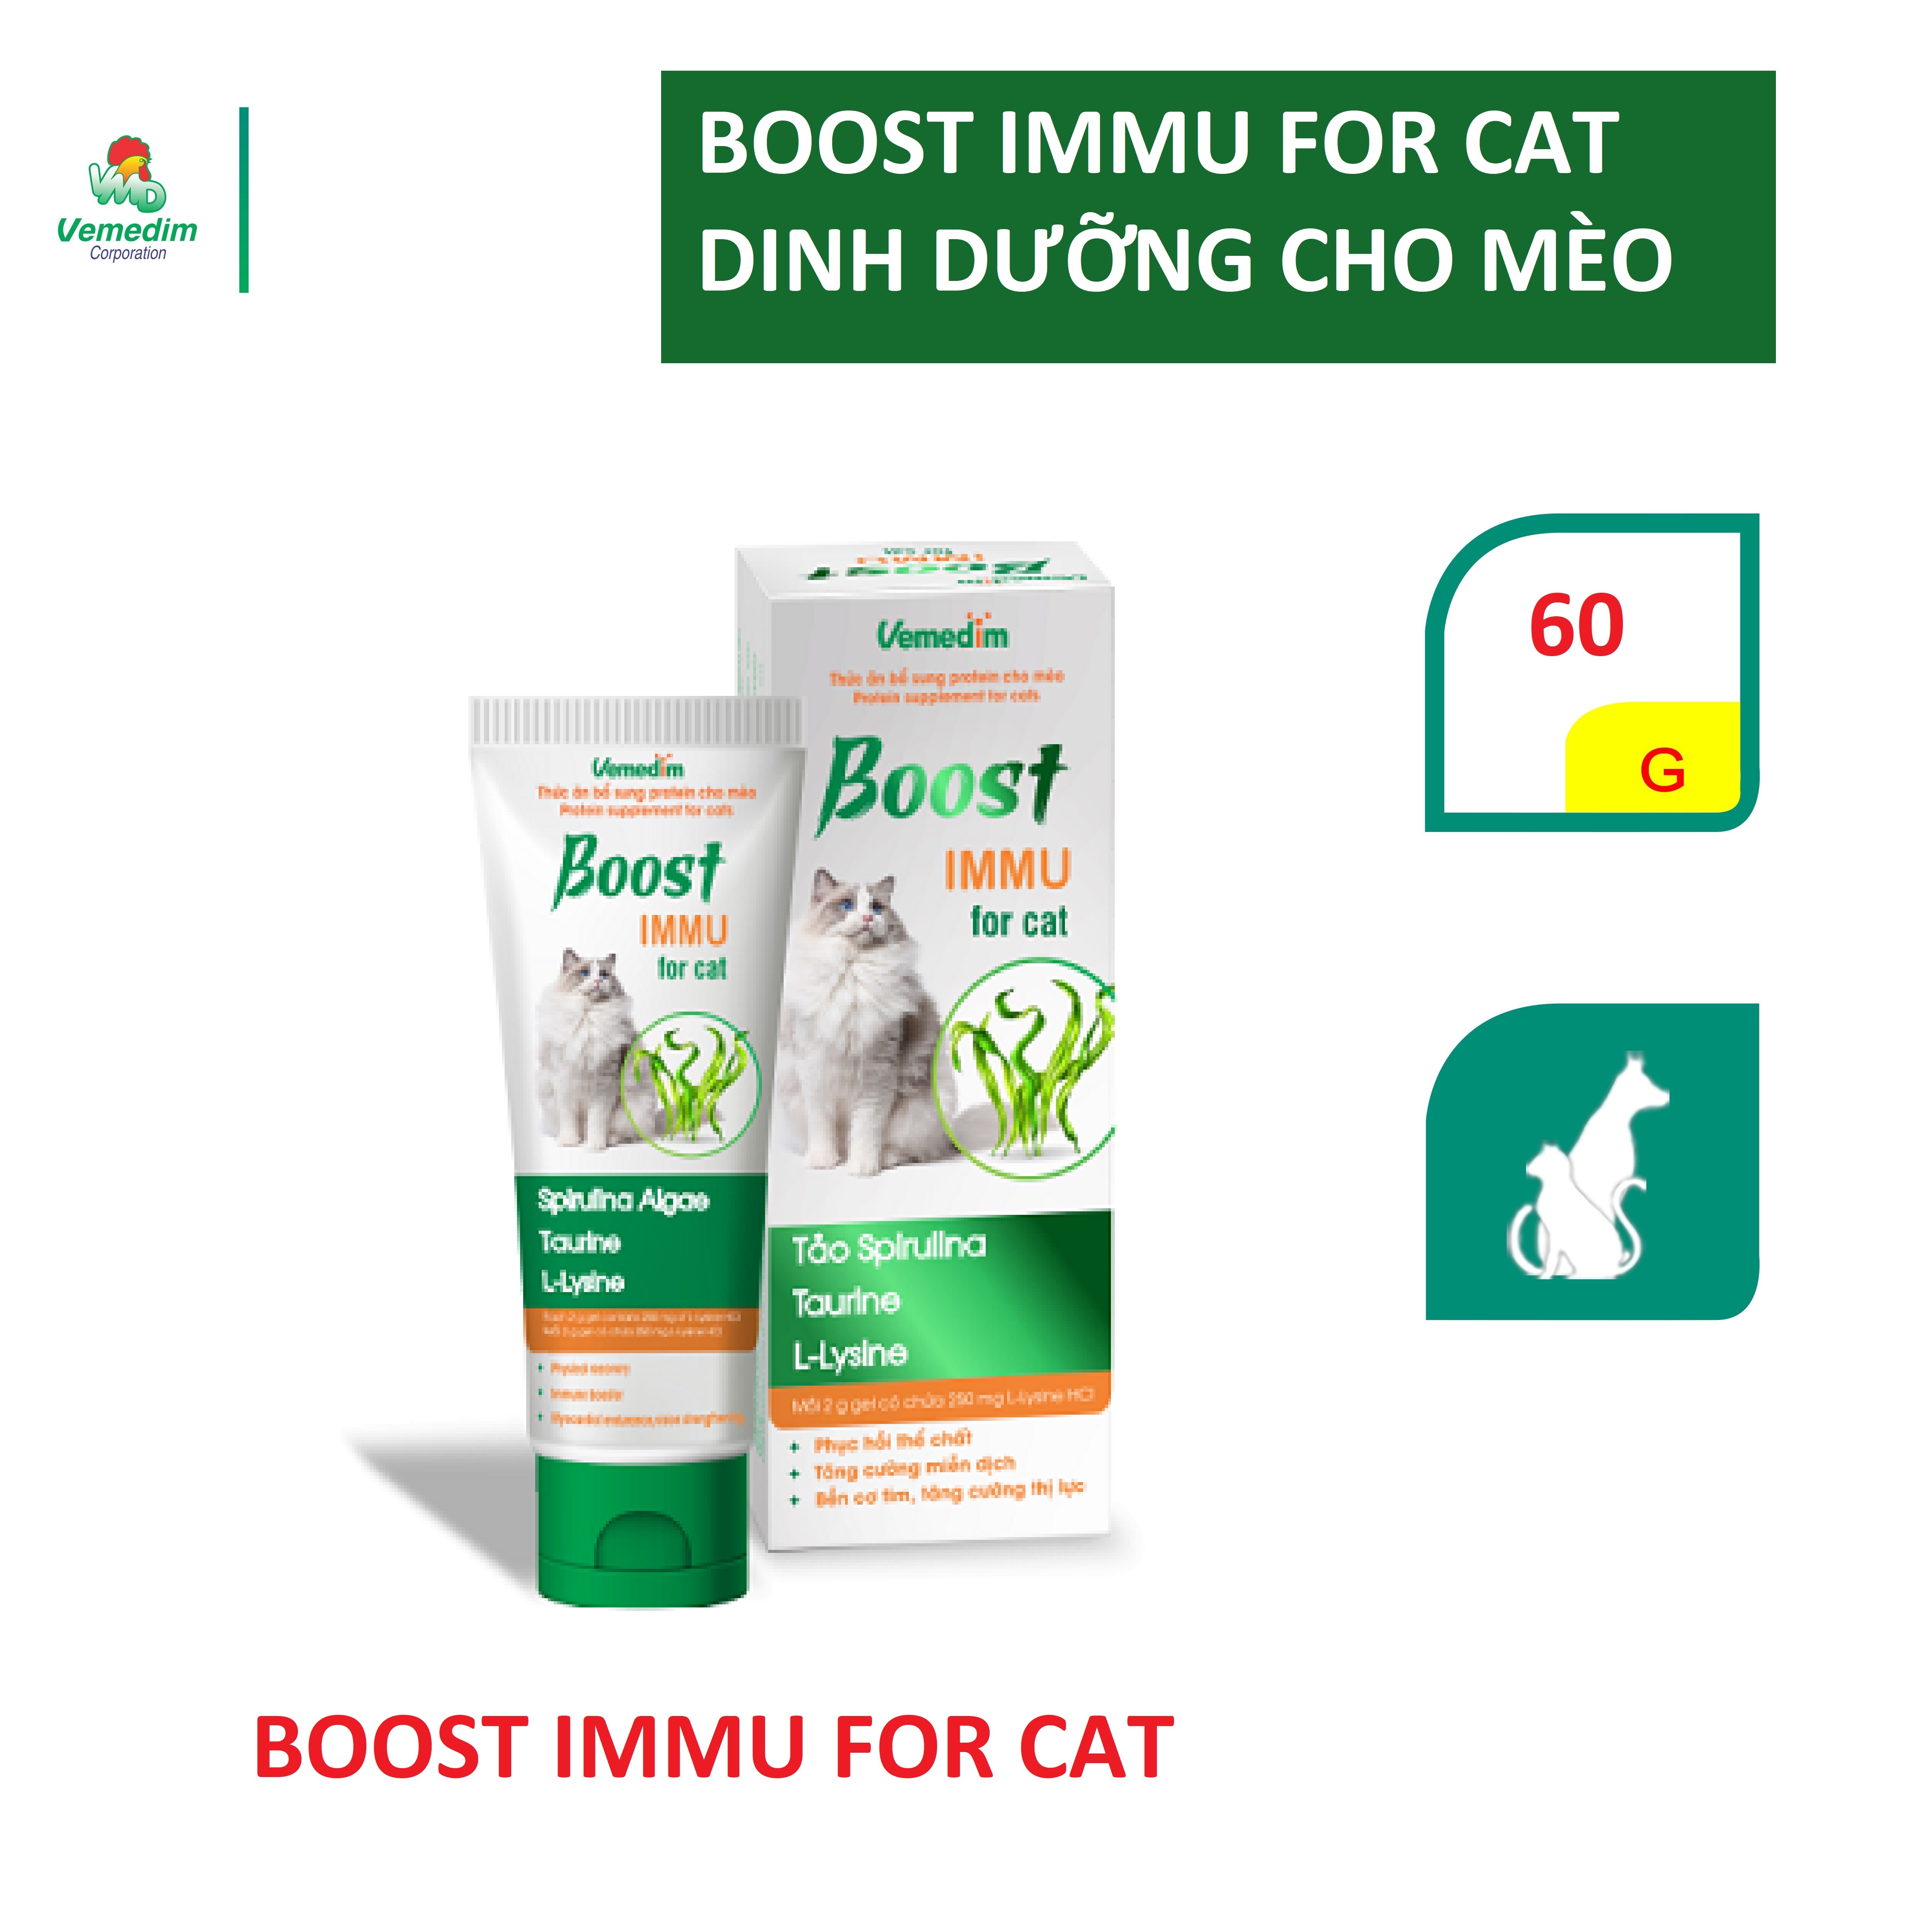 Vemedim Boost IMMU for cat gel dinh dưỡng cho mèo với tảo biển và lysine cung cấp khoáng chất và kích thích thèm ăn, tuýp 60g